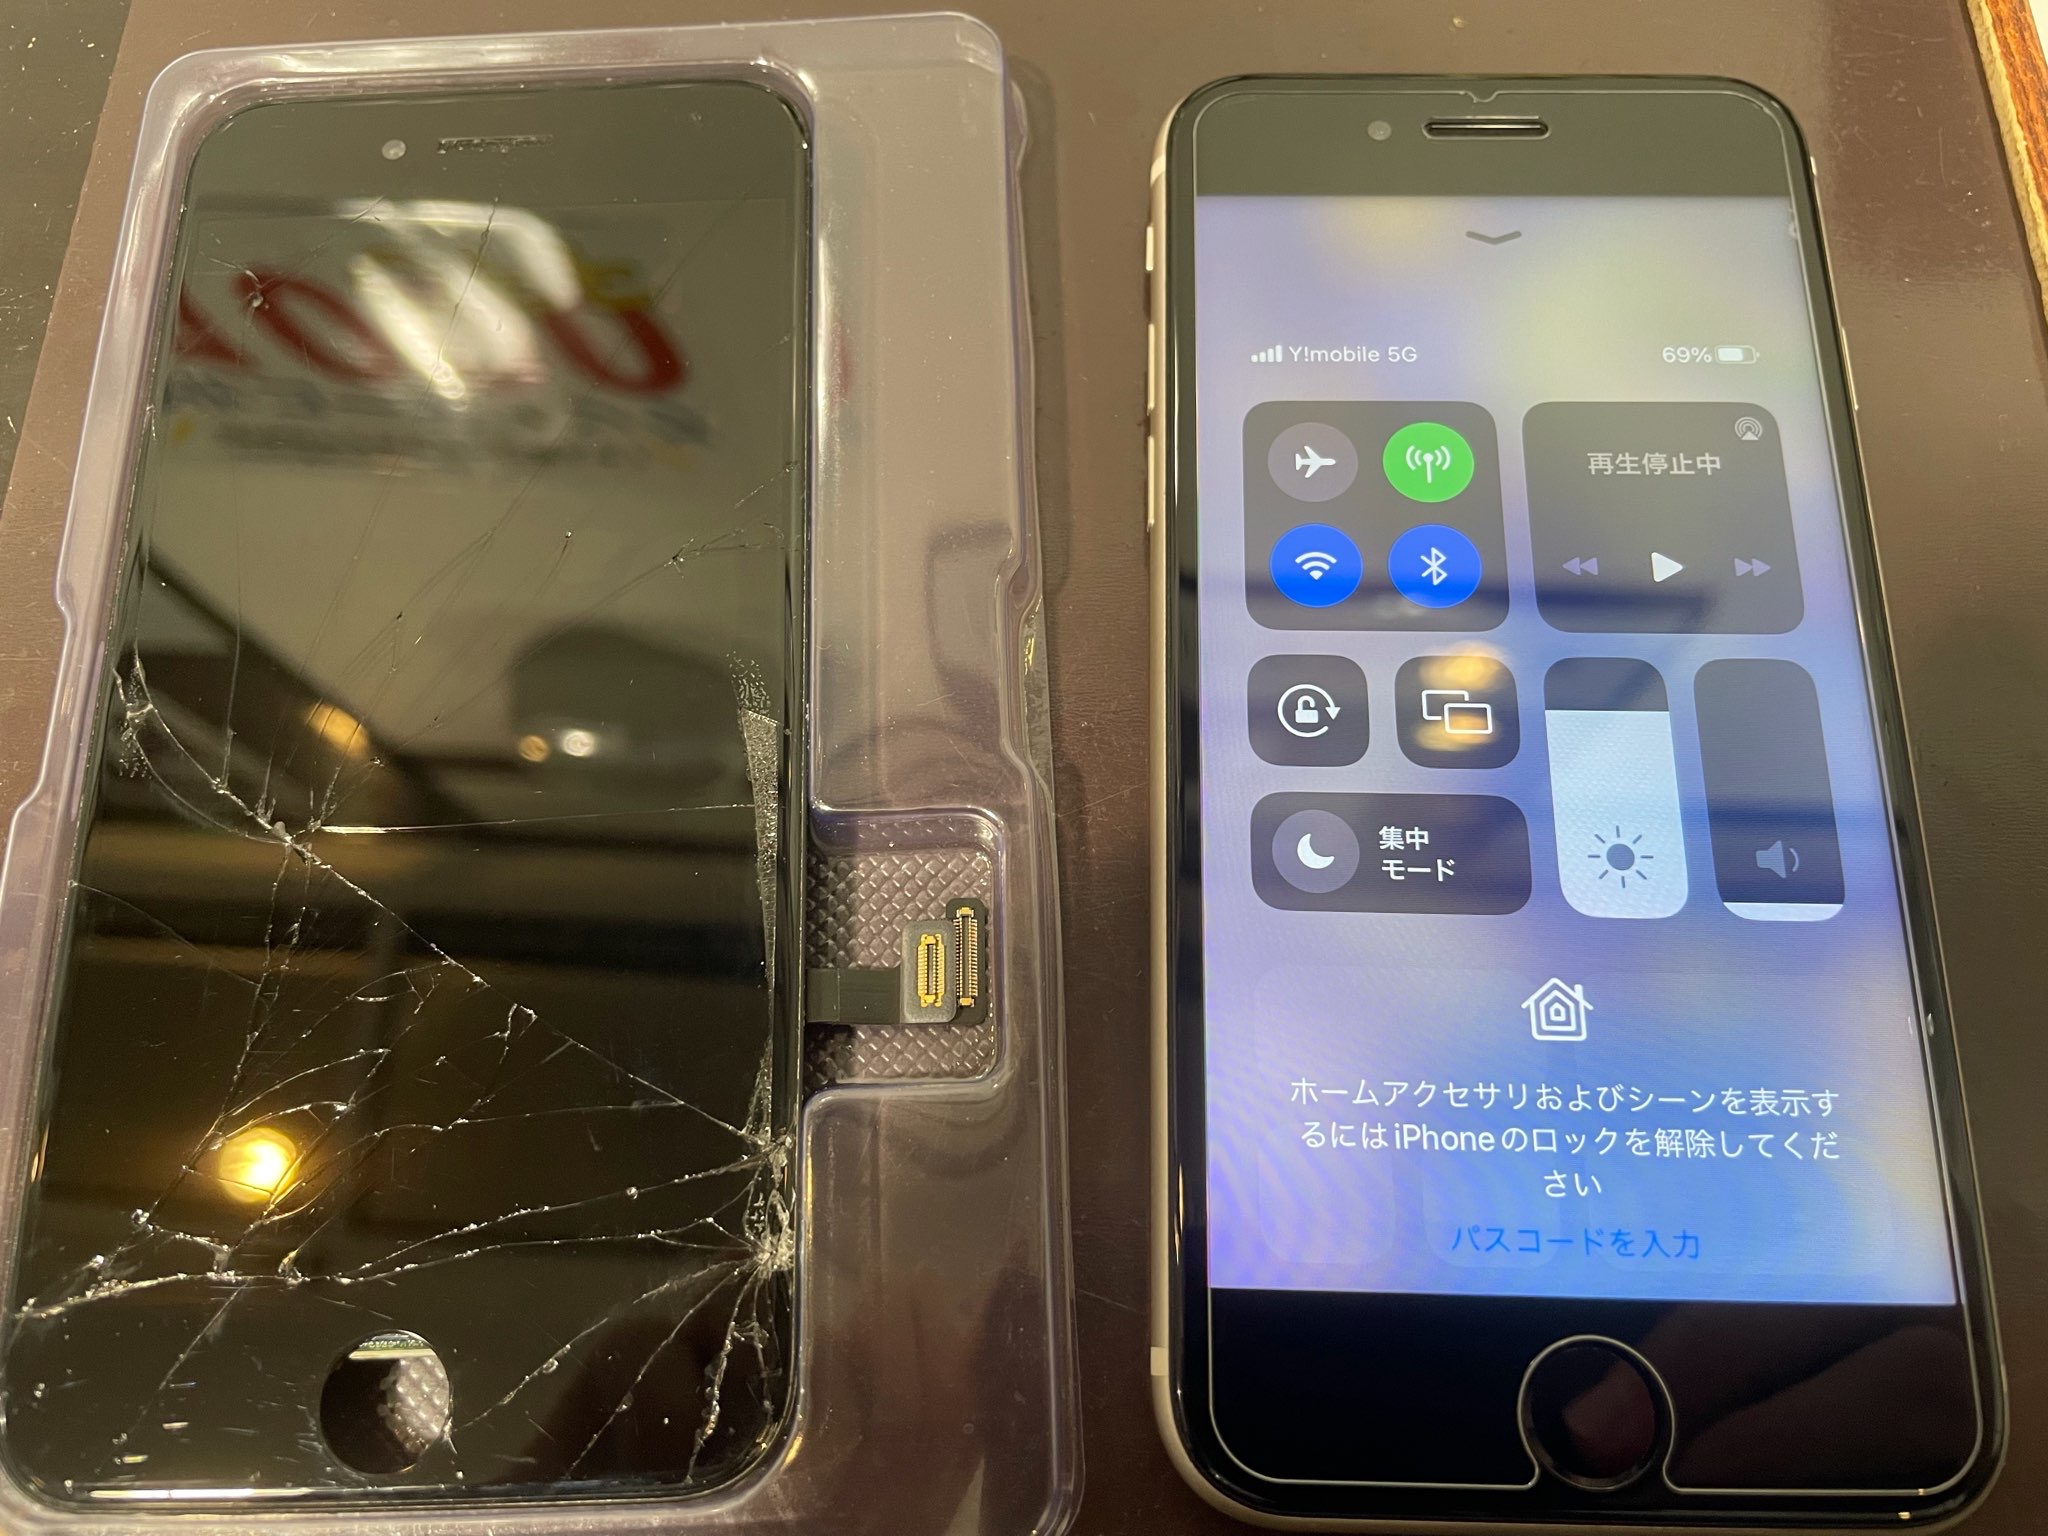 【スマホ修理】iPhoneの画面破損、そのままにしてはいませんか? 最短即日修理が可能!!!｜iPhone SE 第3世代 画面破損修理 兵庫県伊丹市よりご来店